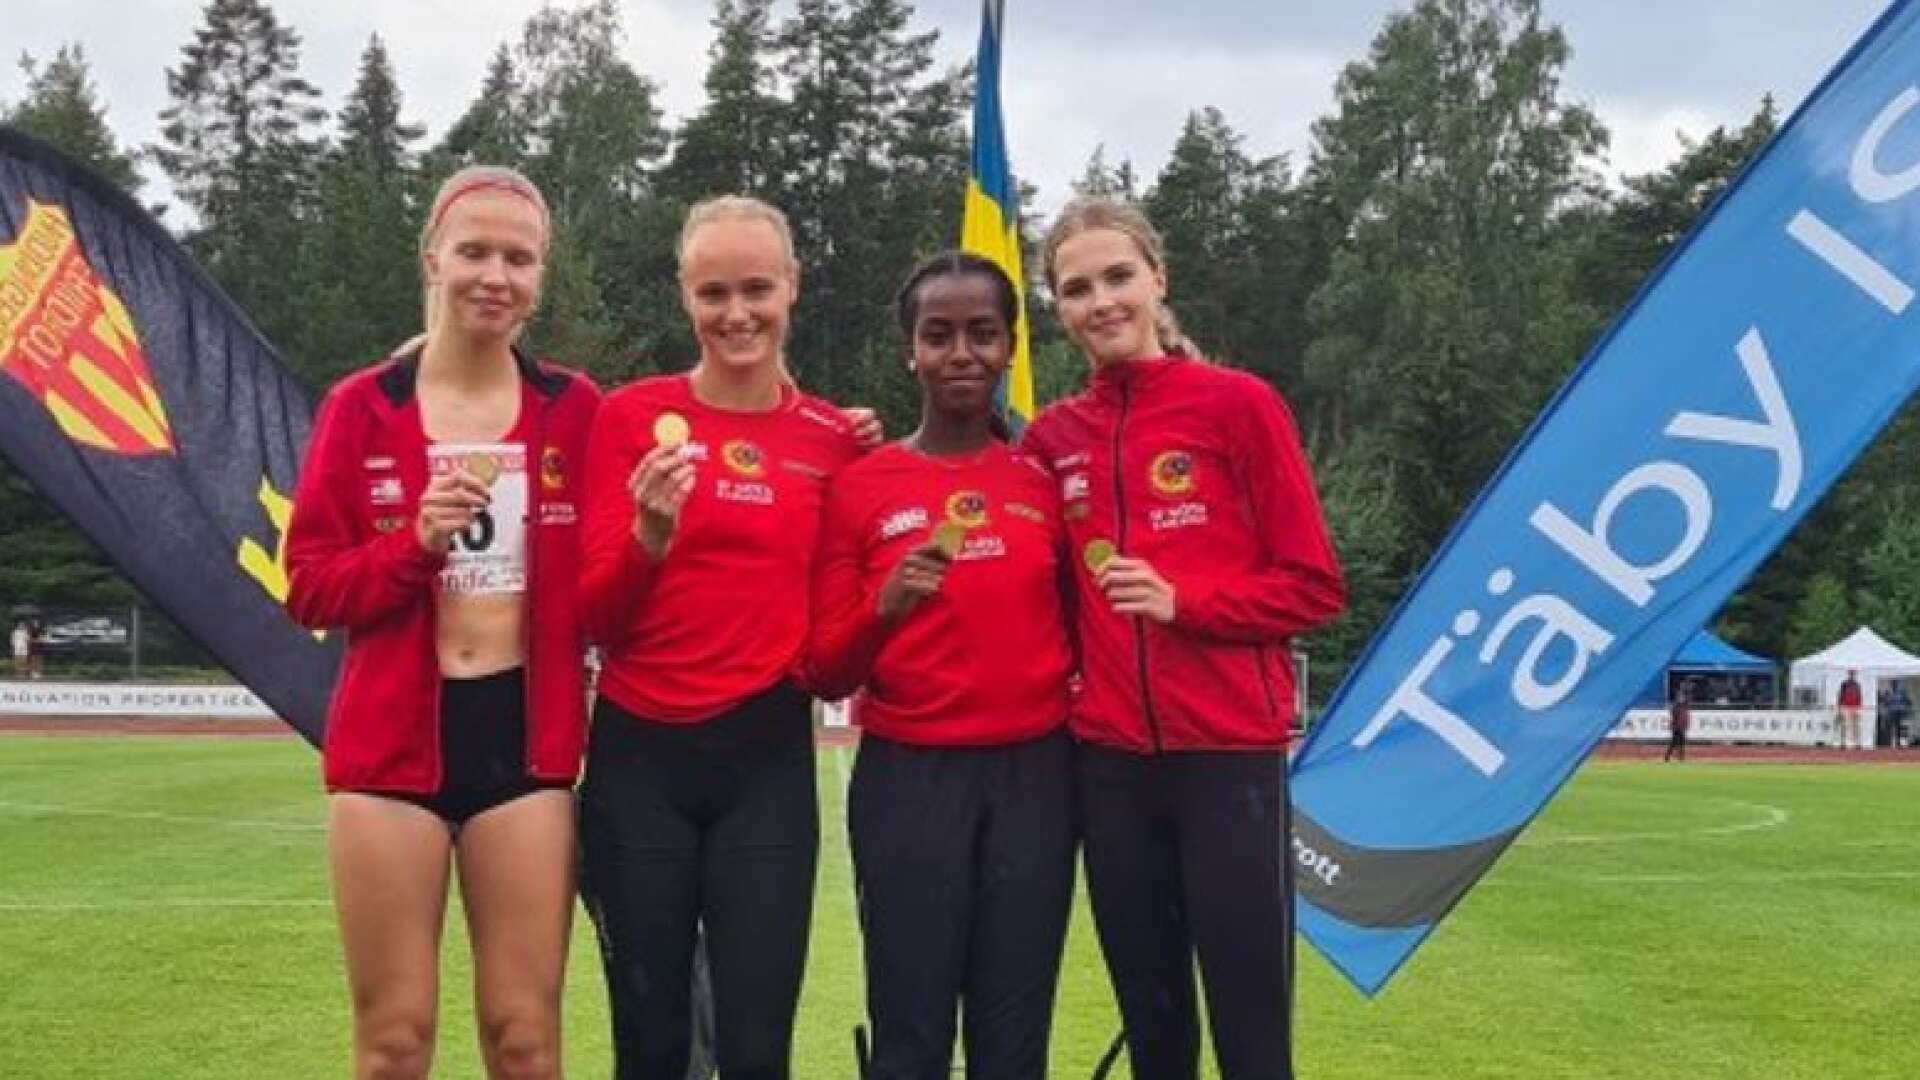 IF Götas F17-lag tog guld på svensk stafett under stafett-SM. I laget finns Vendela Stridsberg, Irma Jonhed, Lathifa Afrah, Ella Holmqvist.